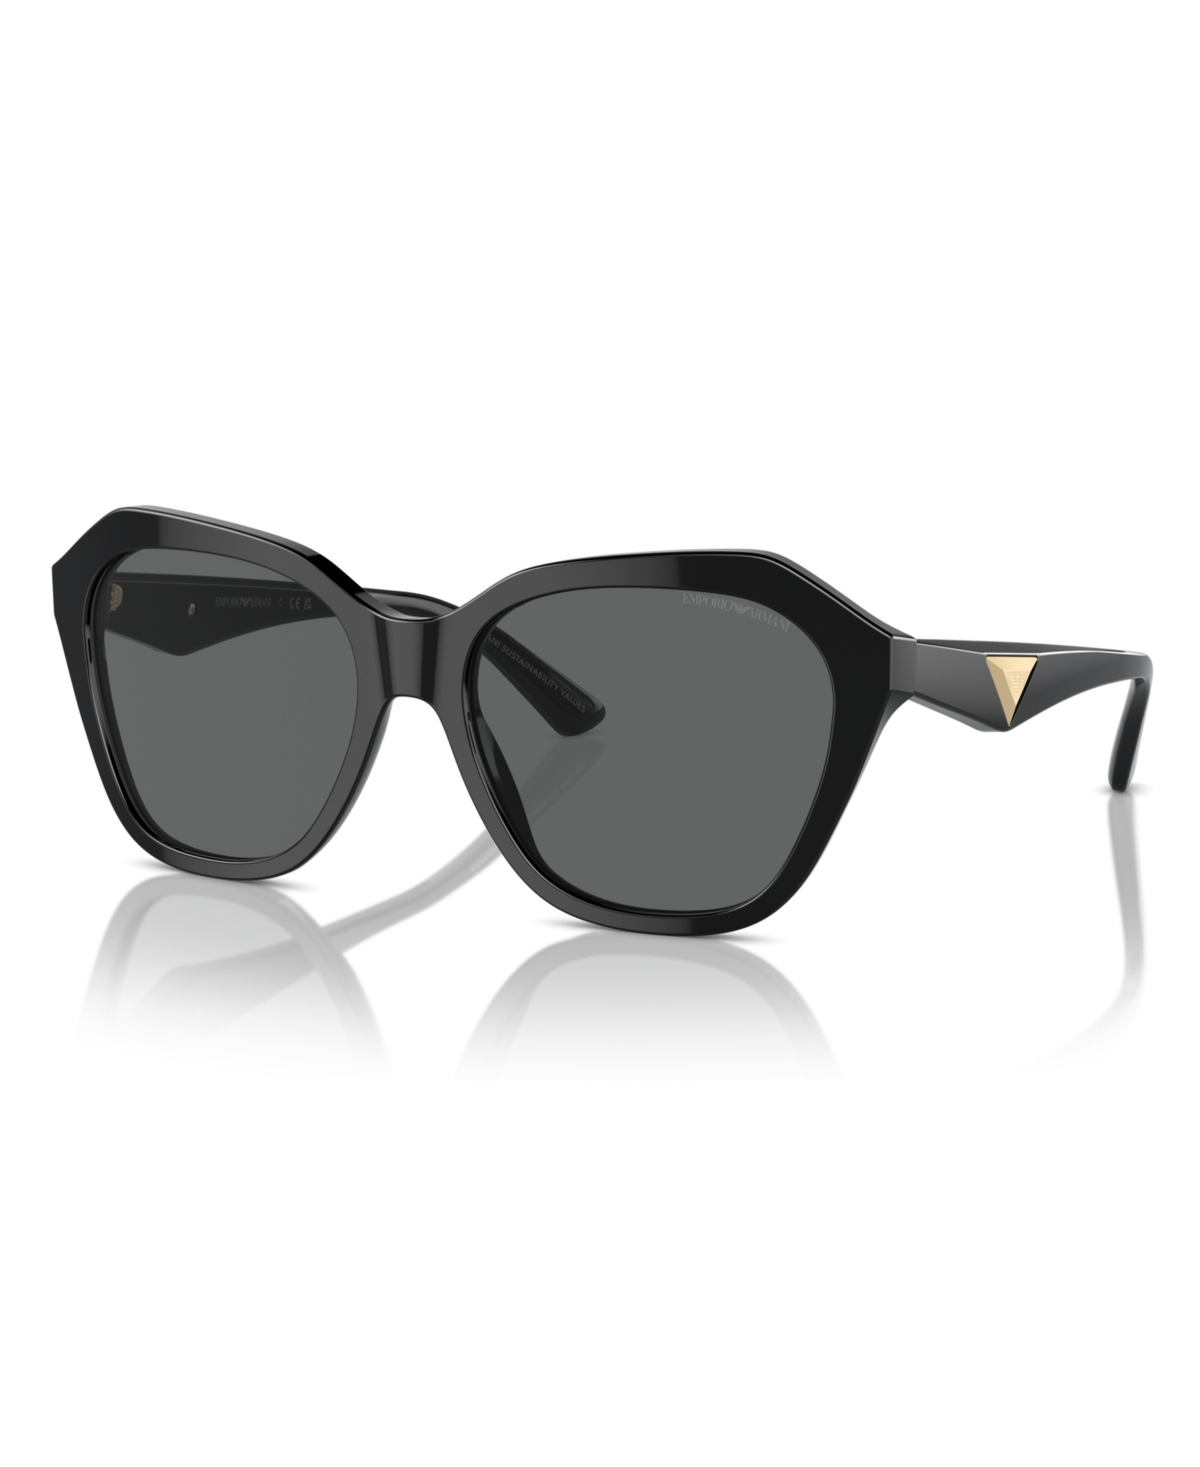 Emporio Armani Women's Sunglasses, Ea4221 In Shiny Black